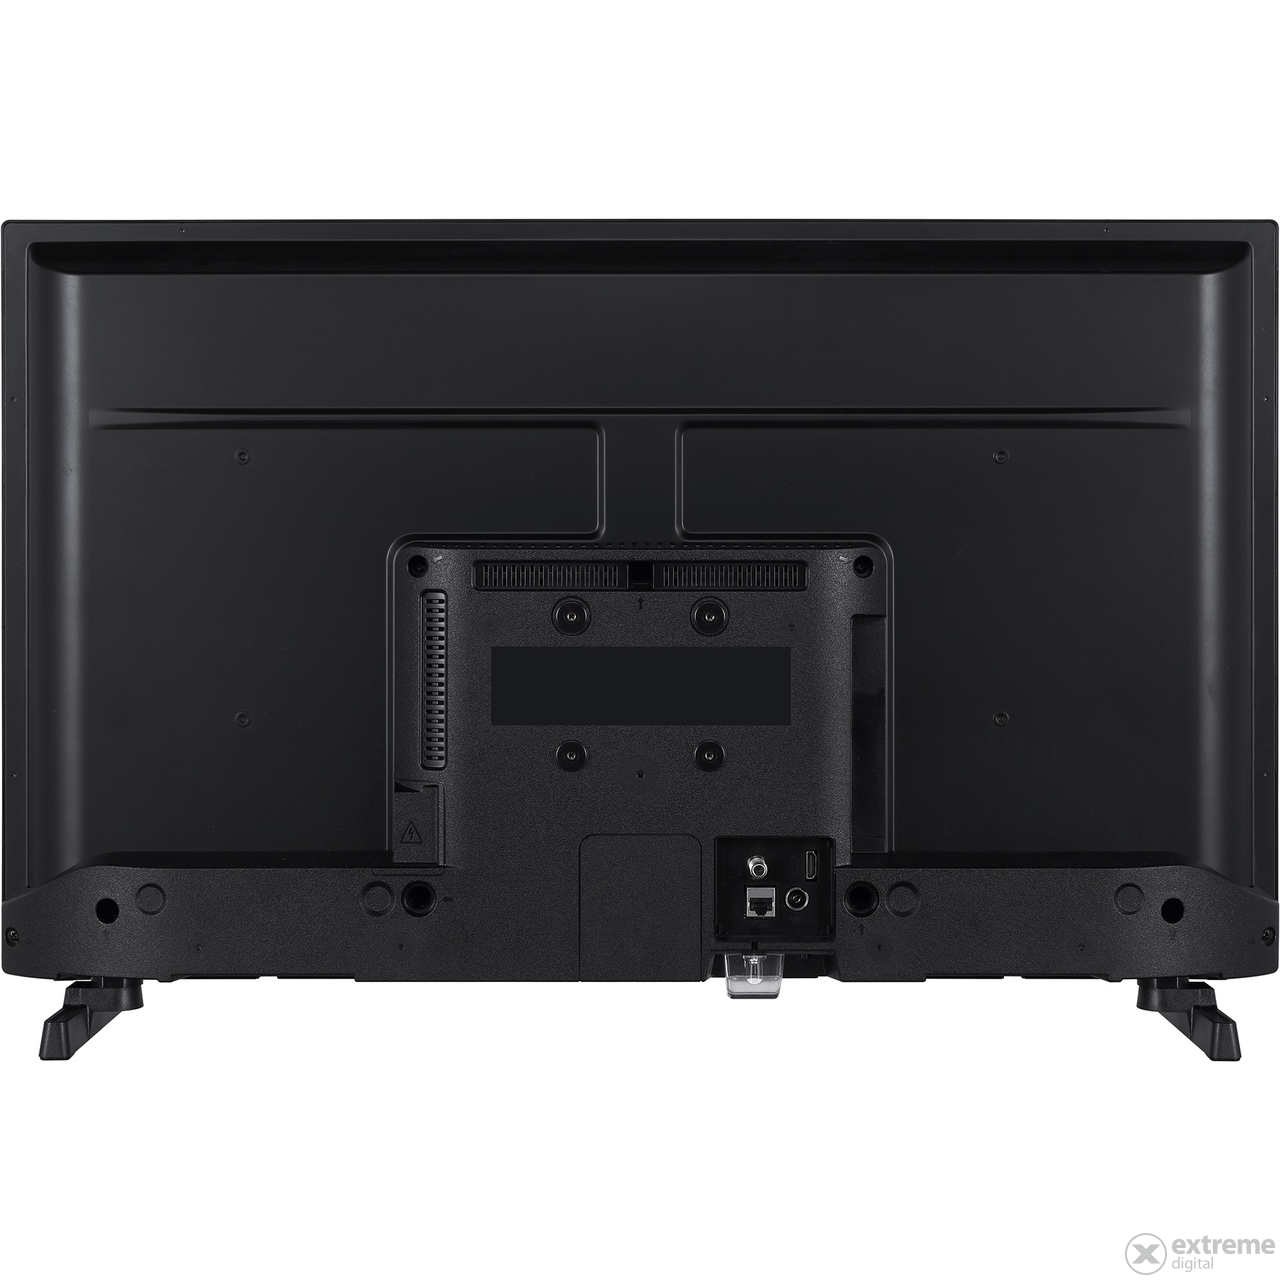 Hitachi 32HE4300 Full HD Smart LED Televizor, 80cm - Odprta embalaža